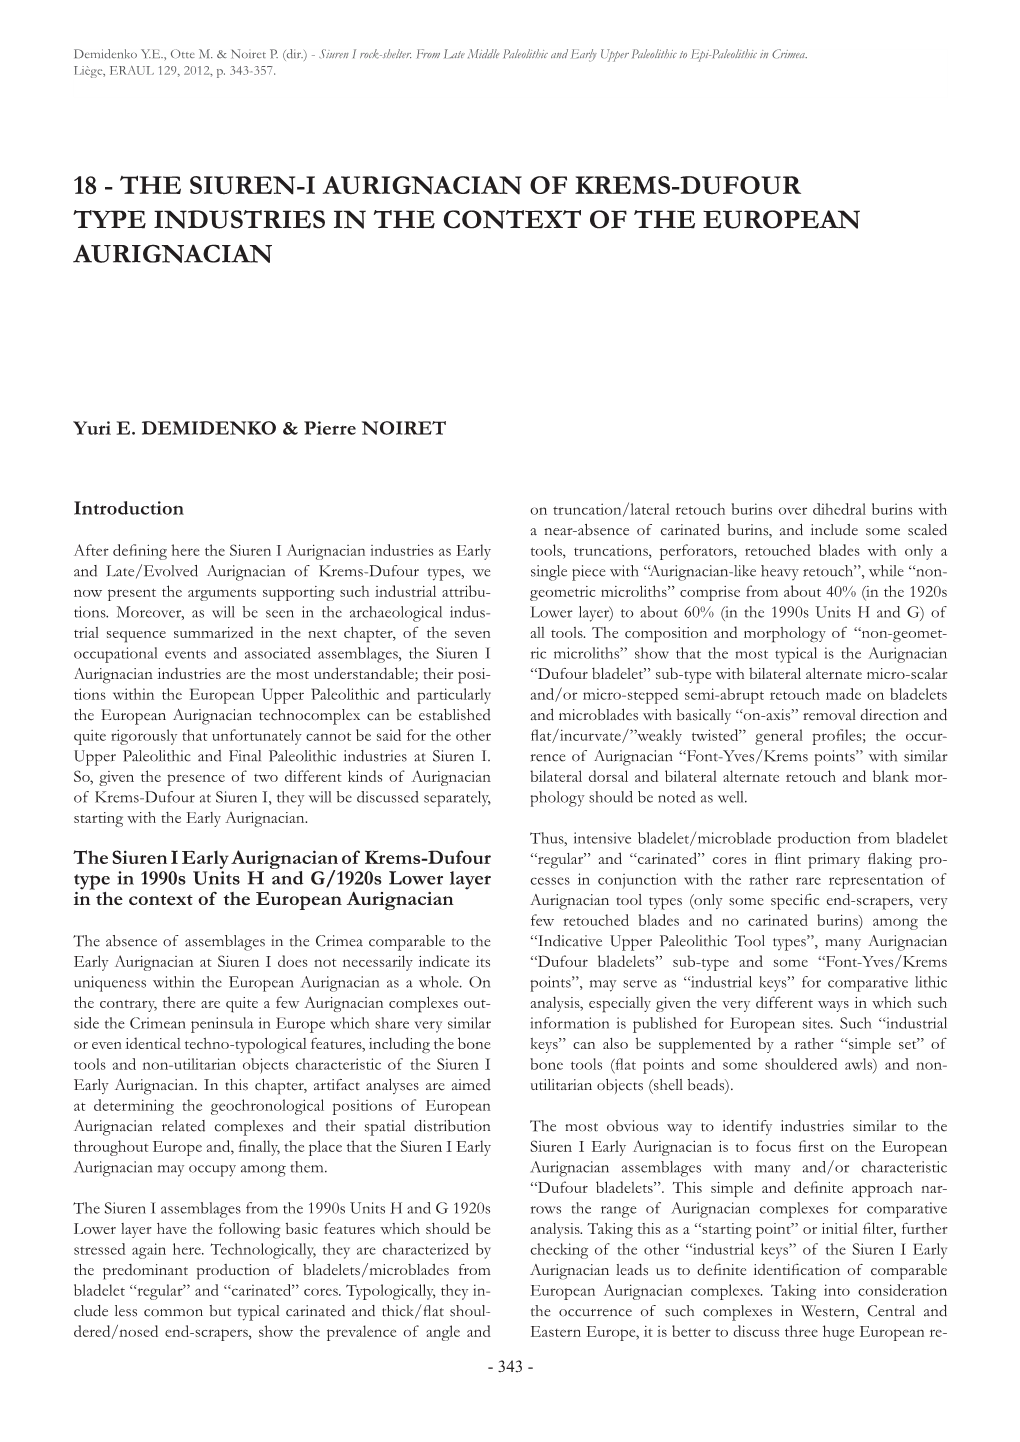 The Siuren-I Aurignacian of Krems-Dufour Type Industries in the Context of the European Aurignacian